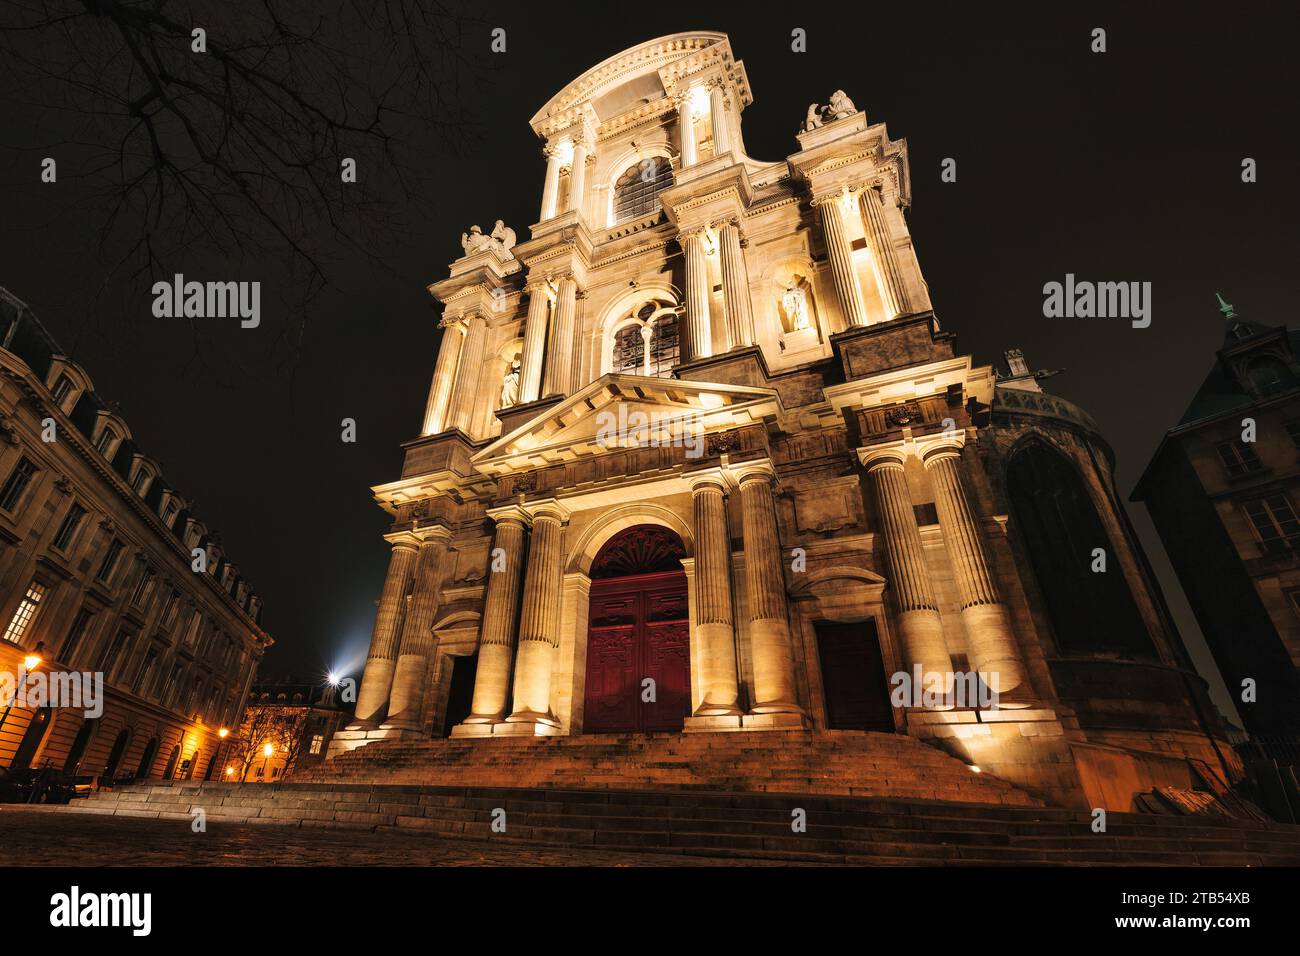 Chiesa di St-Gervais-et-St-Protais, una delle chiese più antiche di Parigi, in Francia Foto Stock